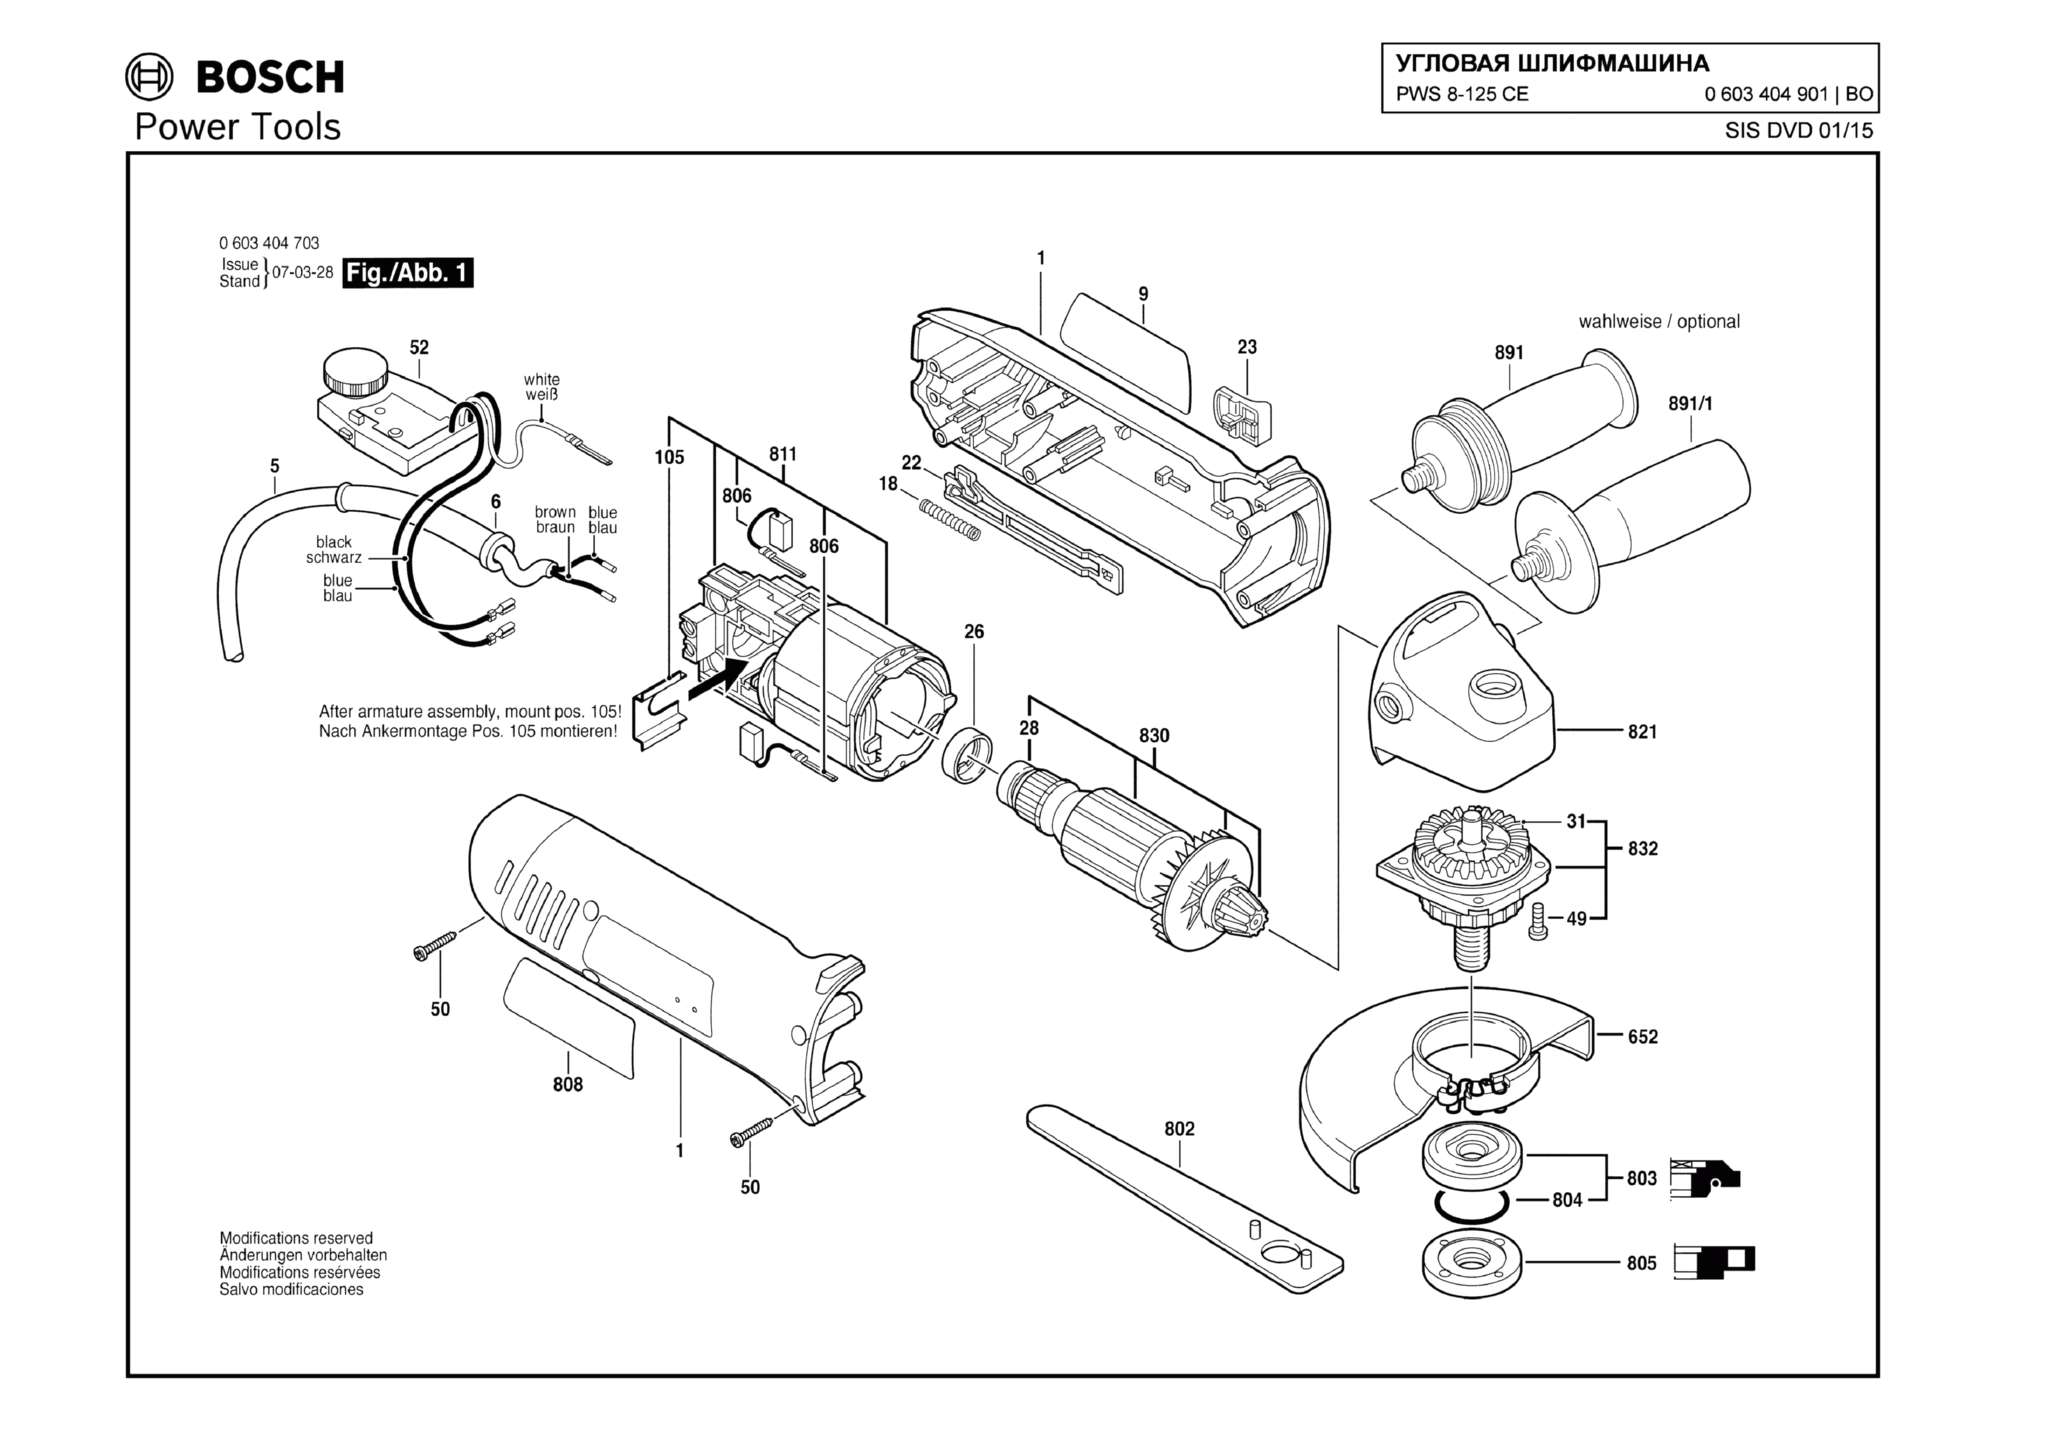 Запчасти, схема и деталировка Bosch PWS 8-125 CE (ТИП 0603404901)